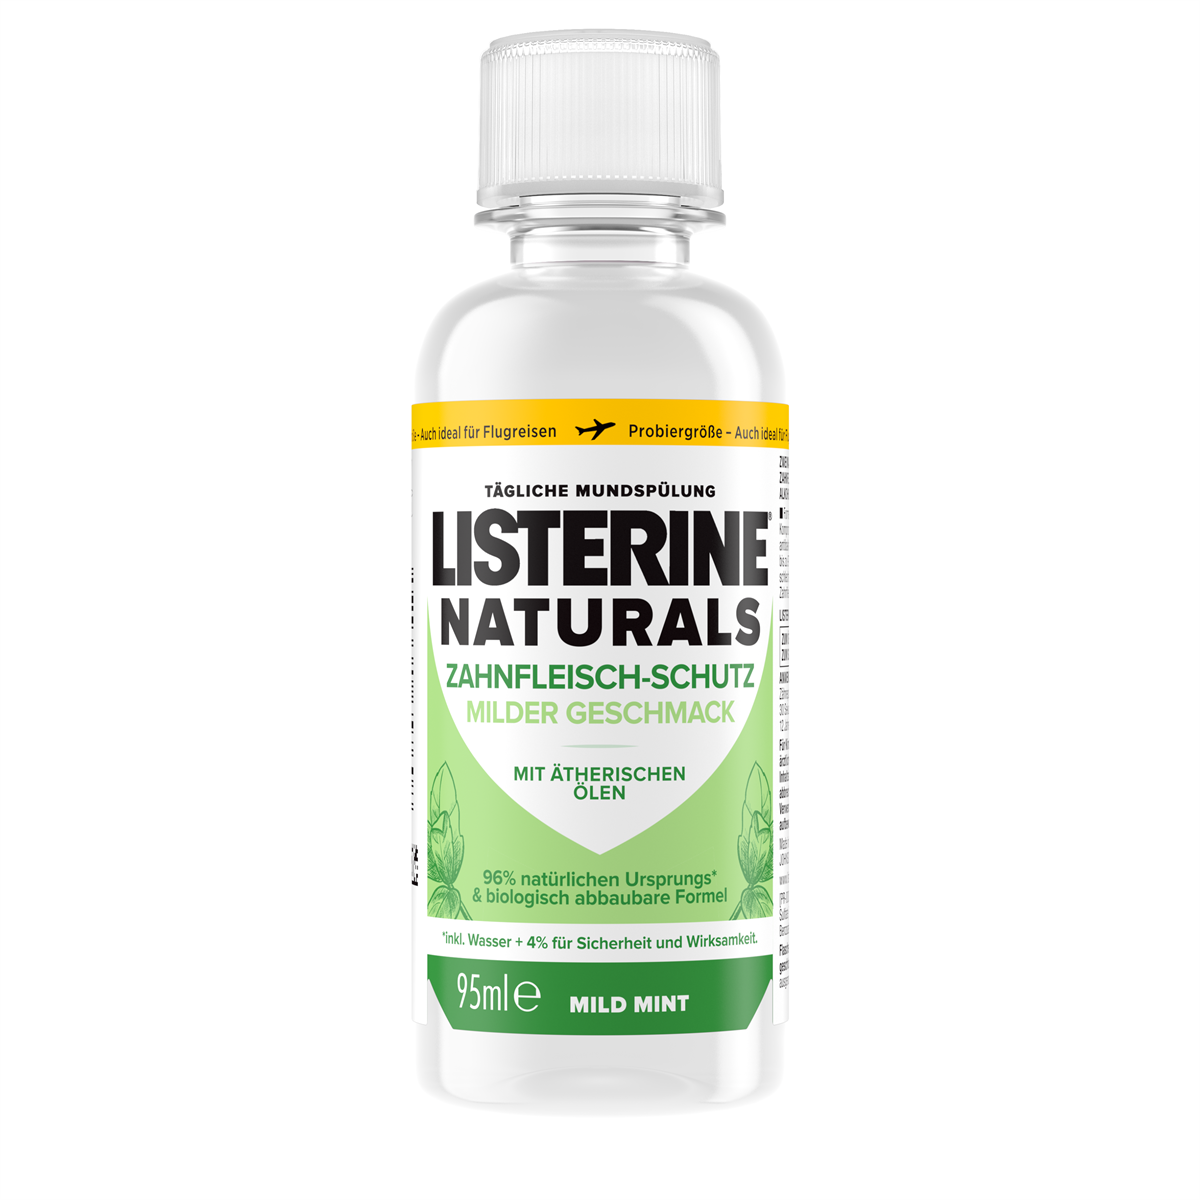 Listerine Naturals Zahnfleisch-Schutz Reisegröße 95ml